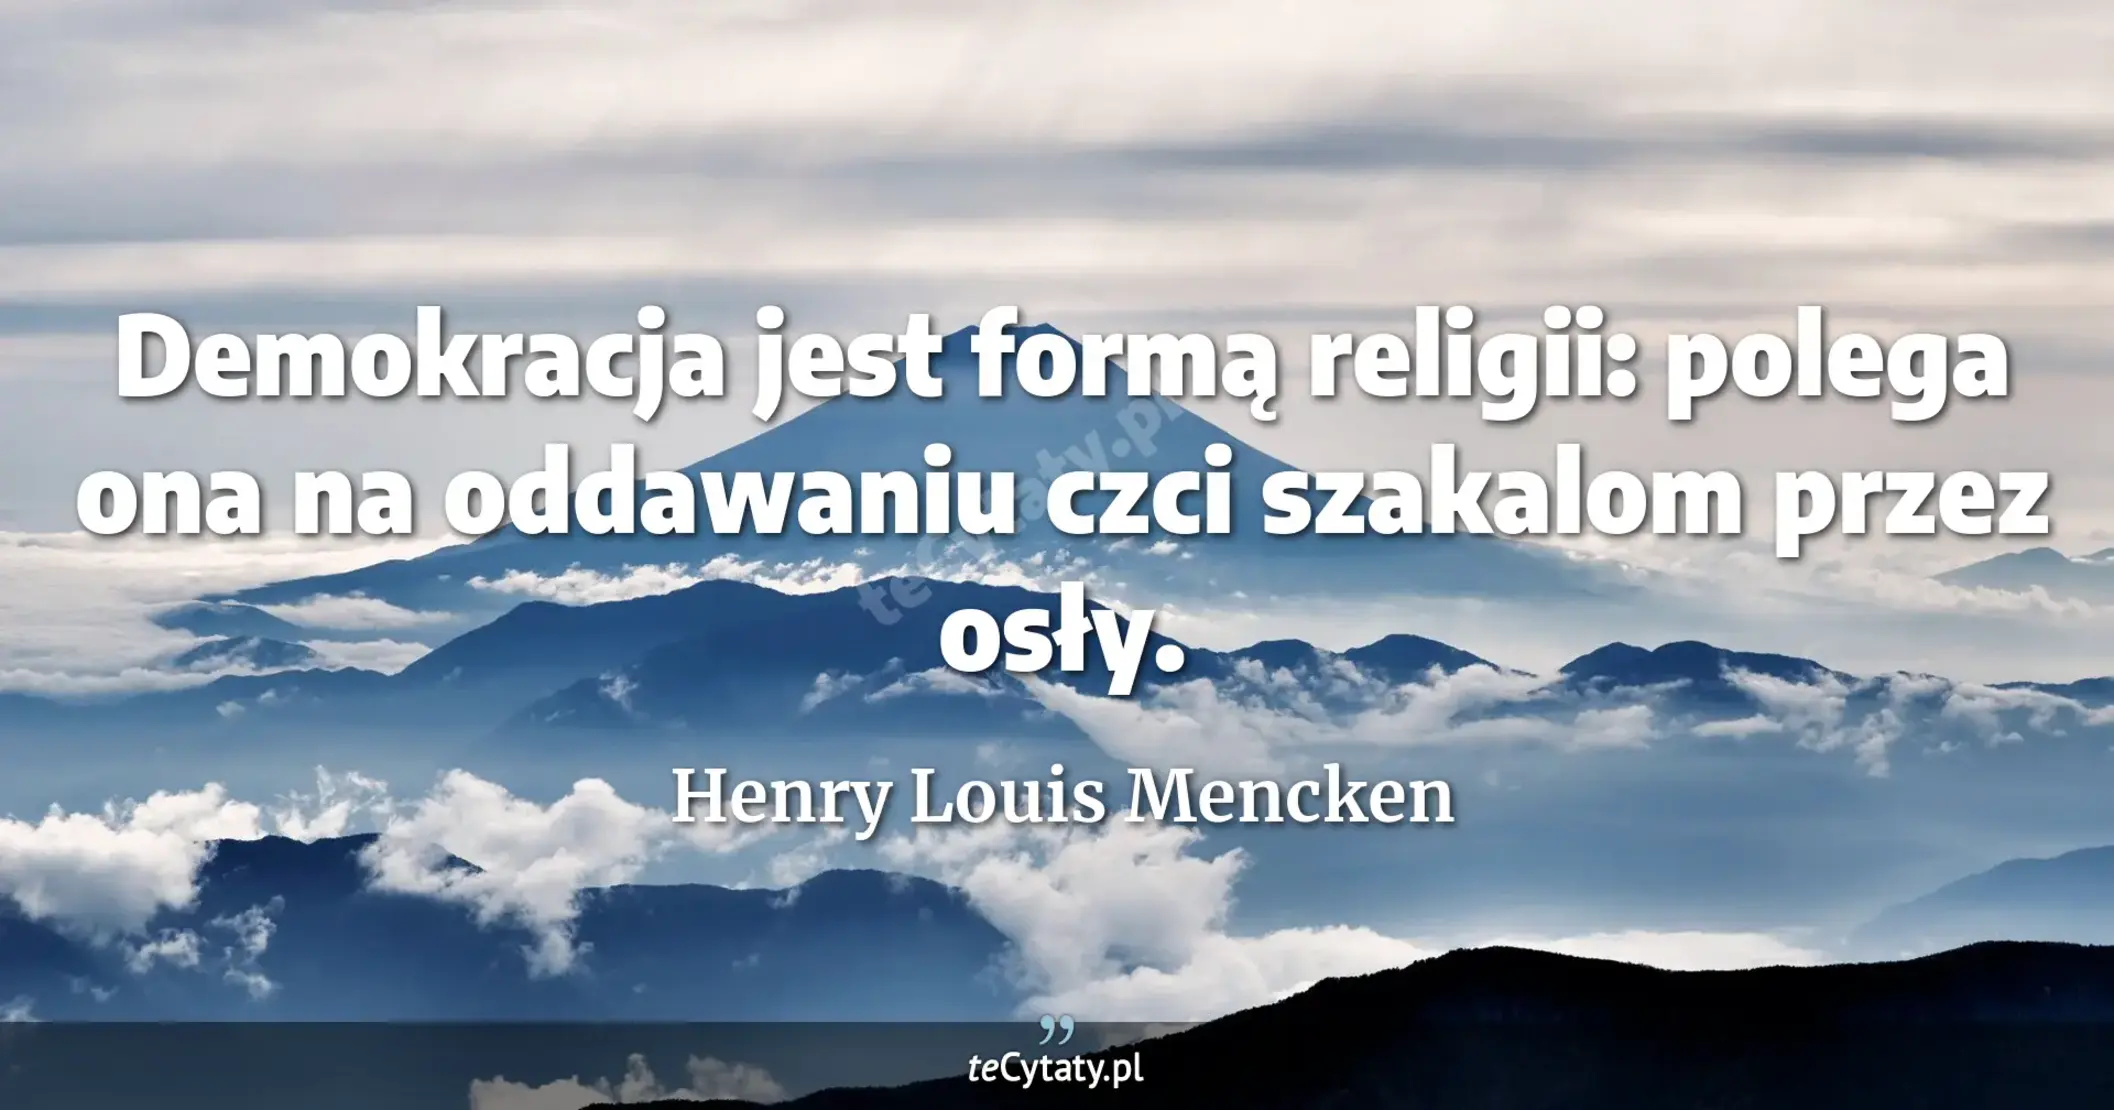 Demokracja jest formą religii: polega ona na oddawaniu czci szakalom przez osły. - Henry Louis Mencken